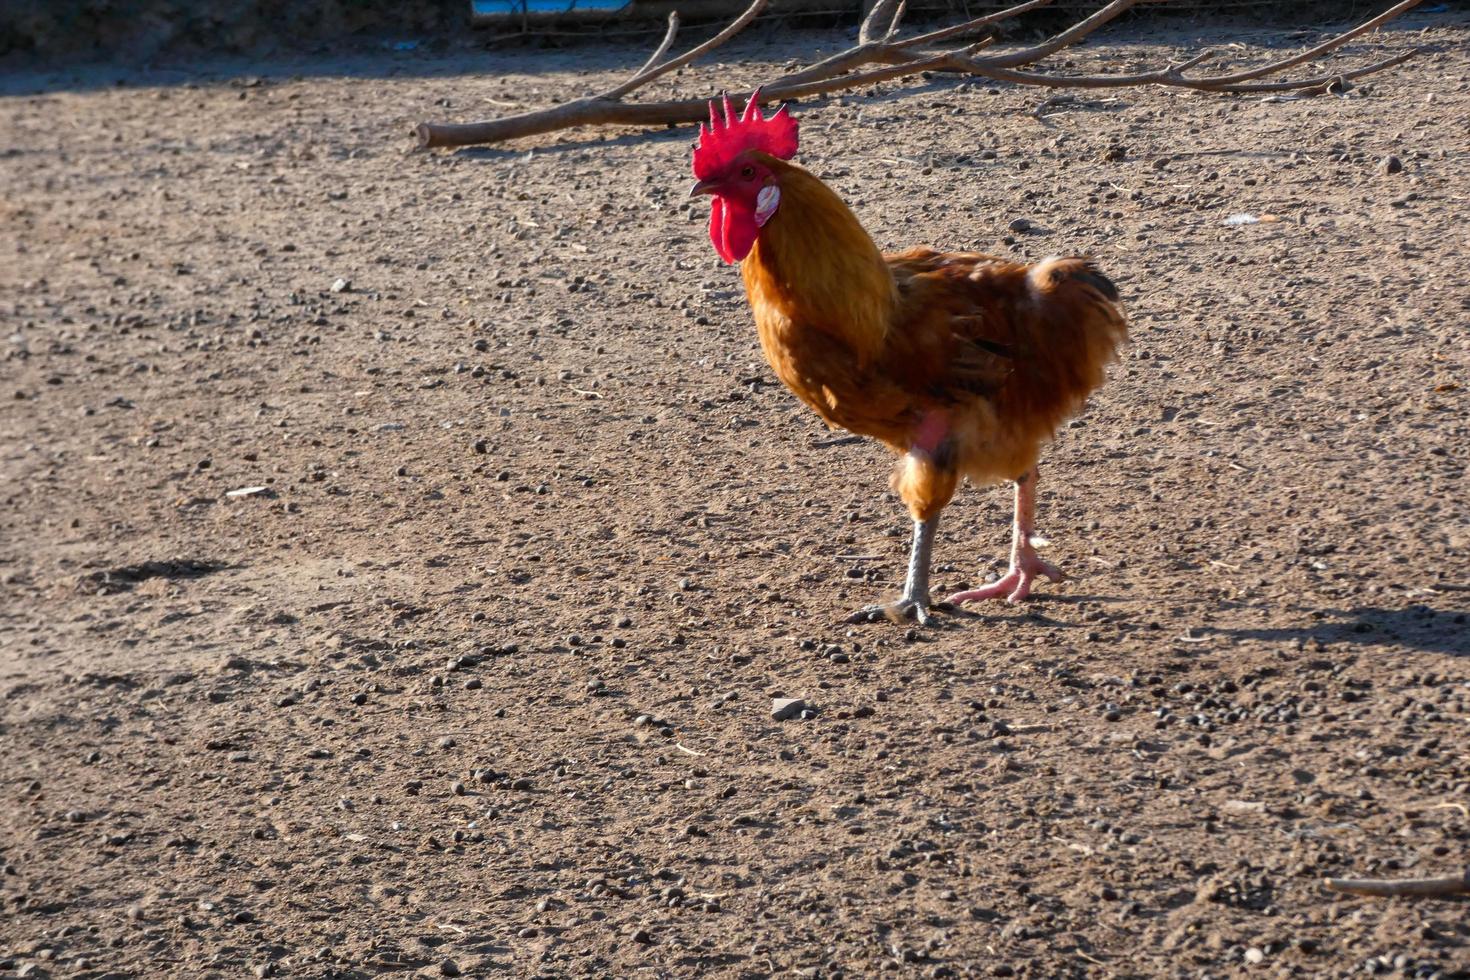 gallos y gallinas de corral en una granja foto